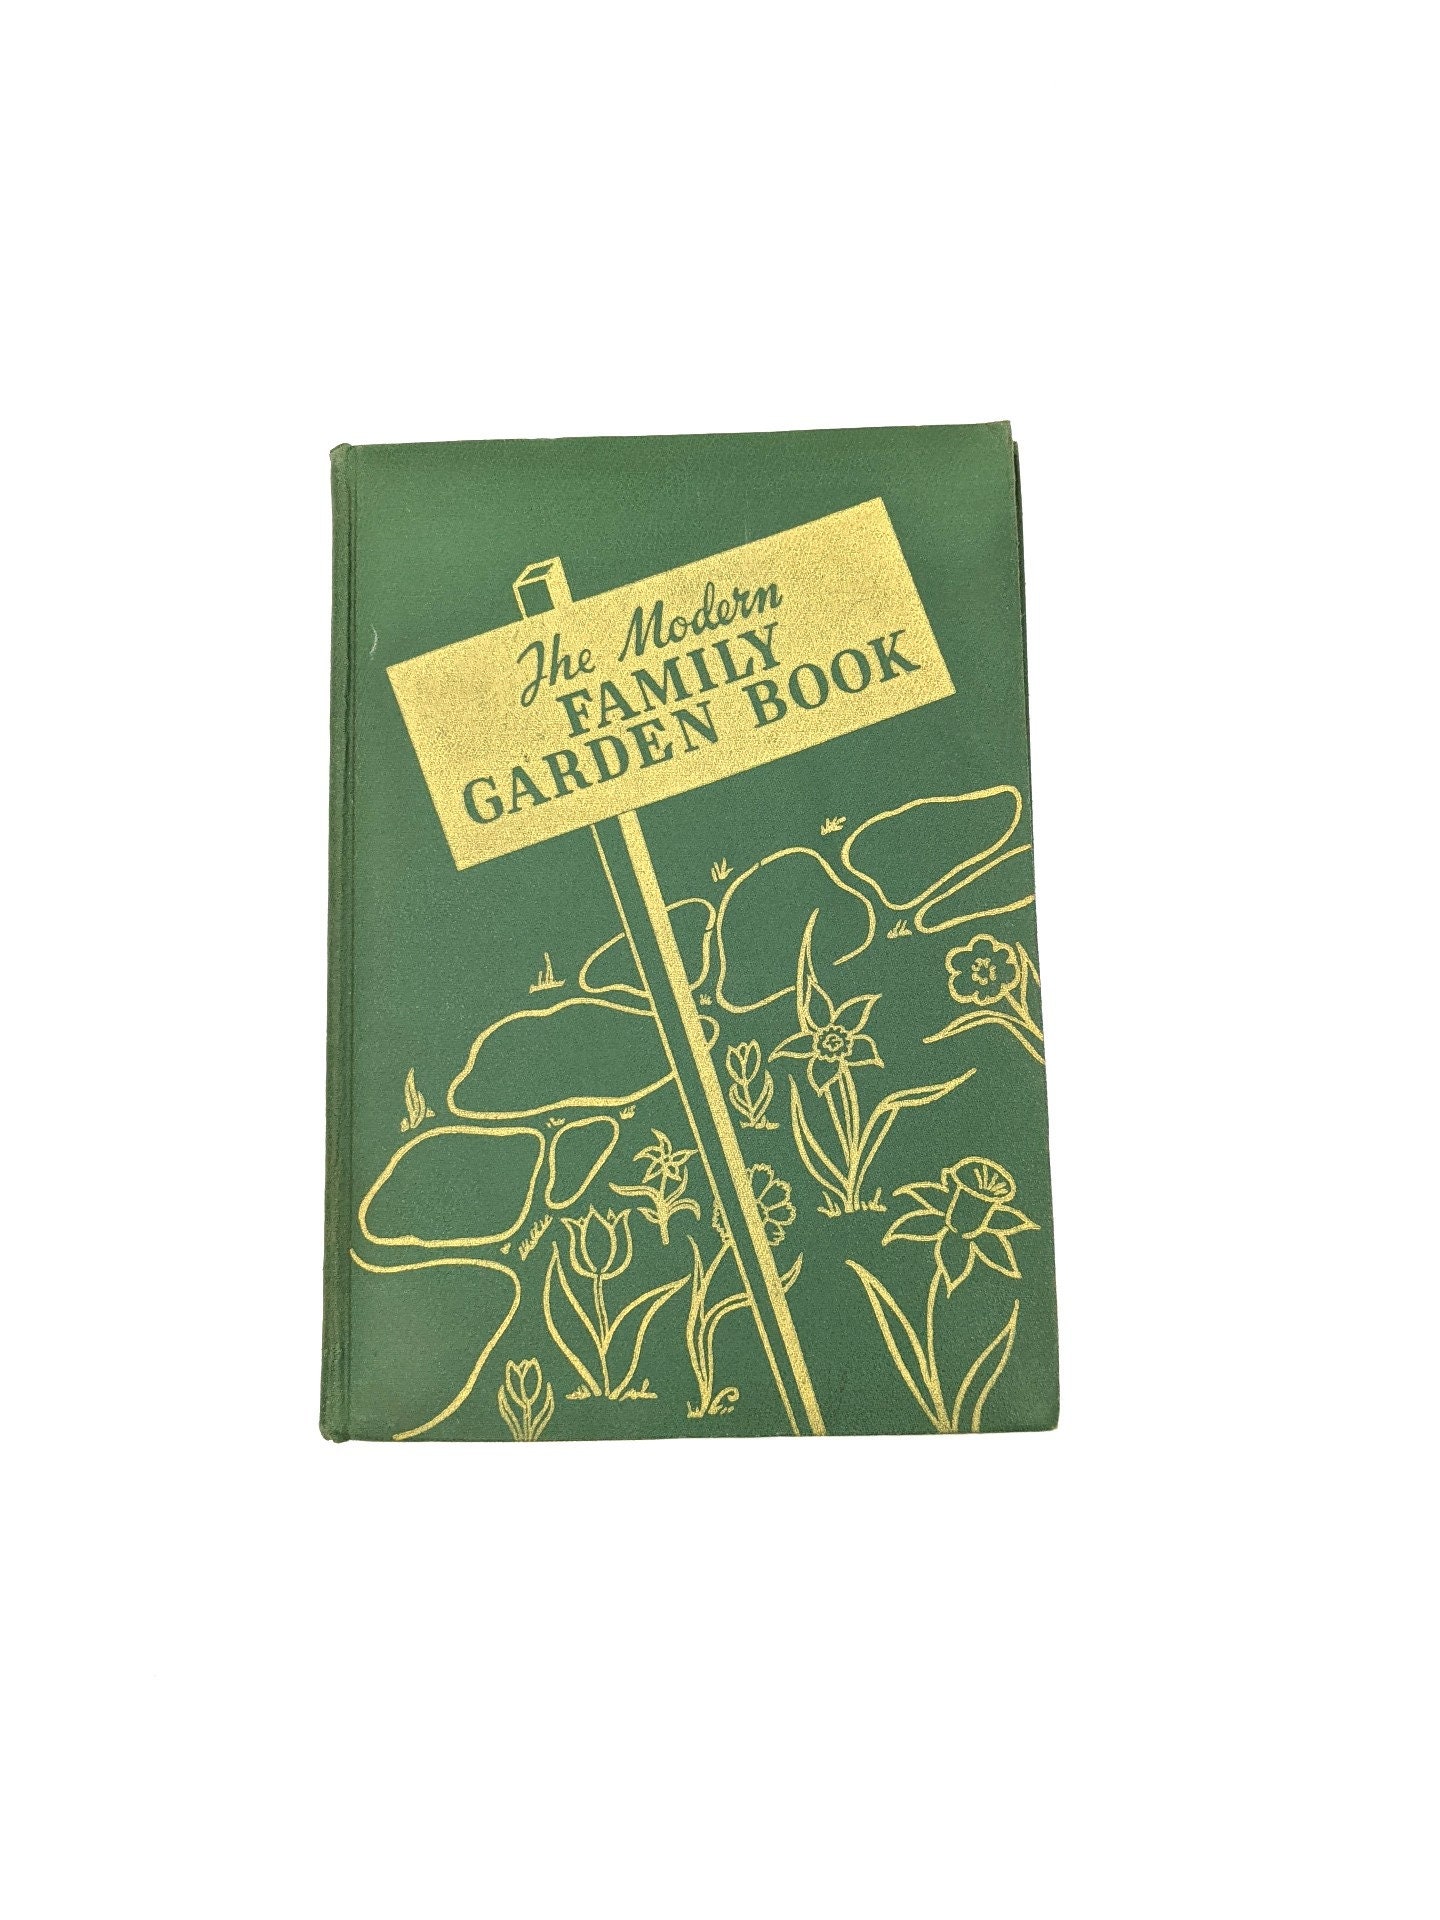 The Modern Family Garden Book by Roy E Biles 1940s Gardening photo